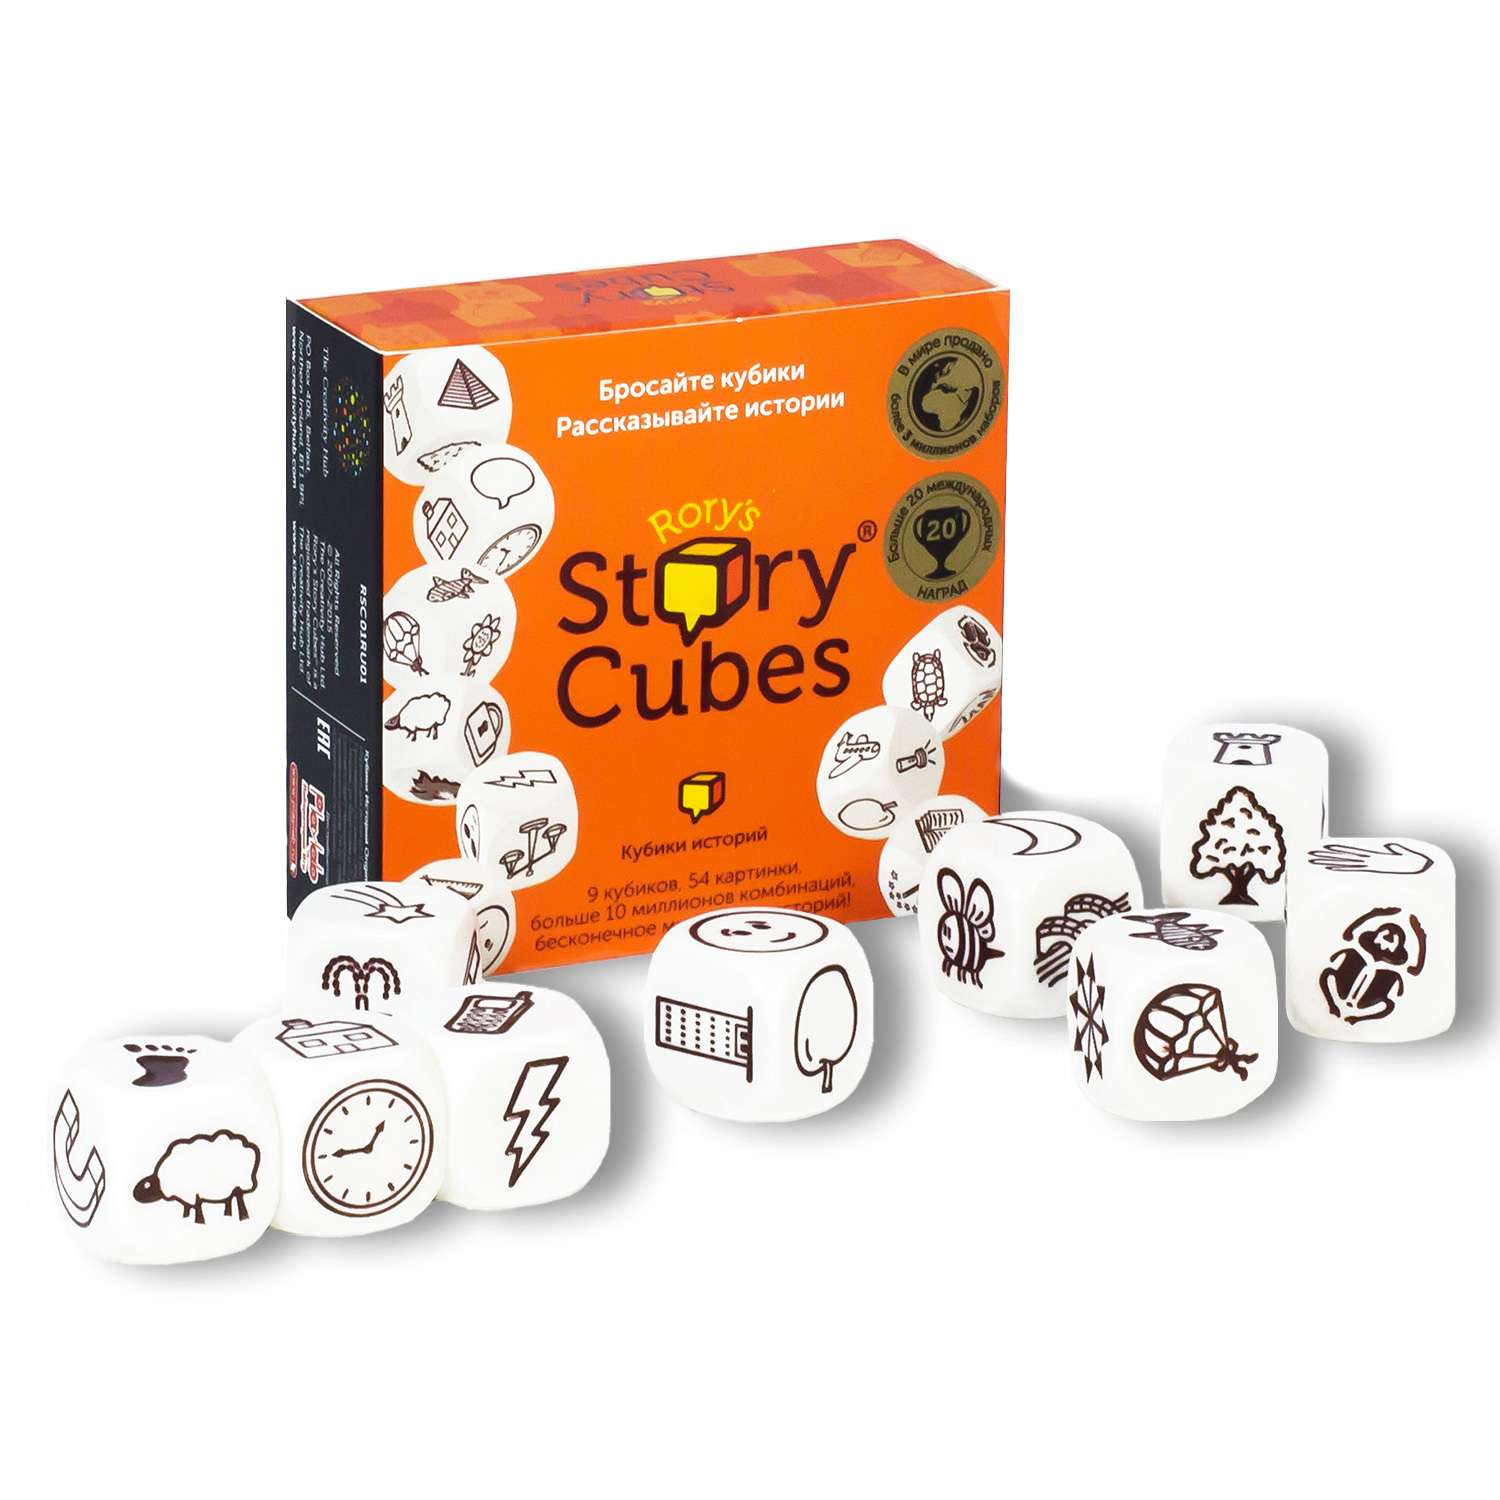 Кубики Историй Rory`s Story Cubes Кубики Историй. Original (9 кубиков) - фото 1